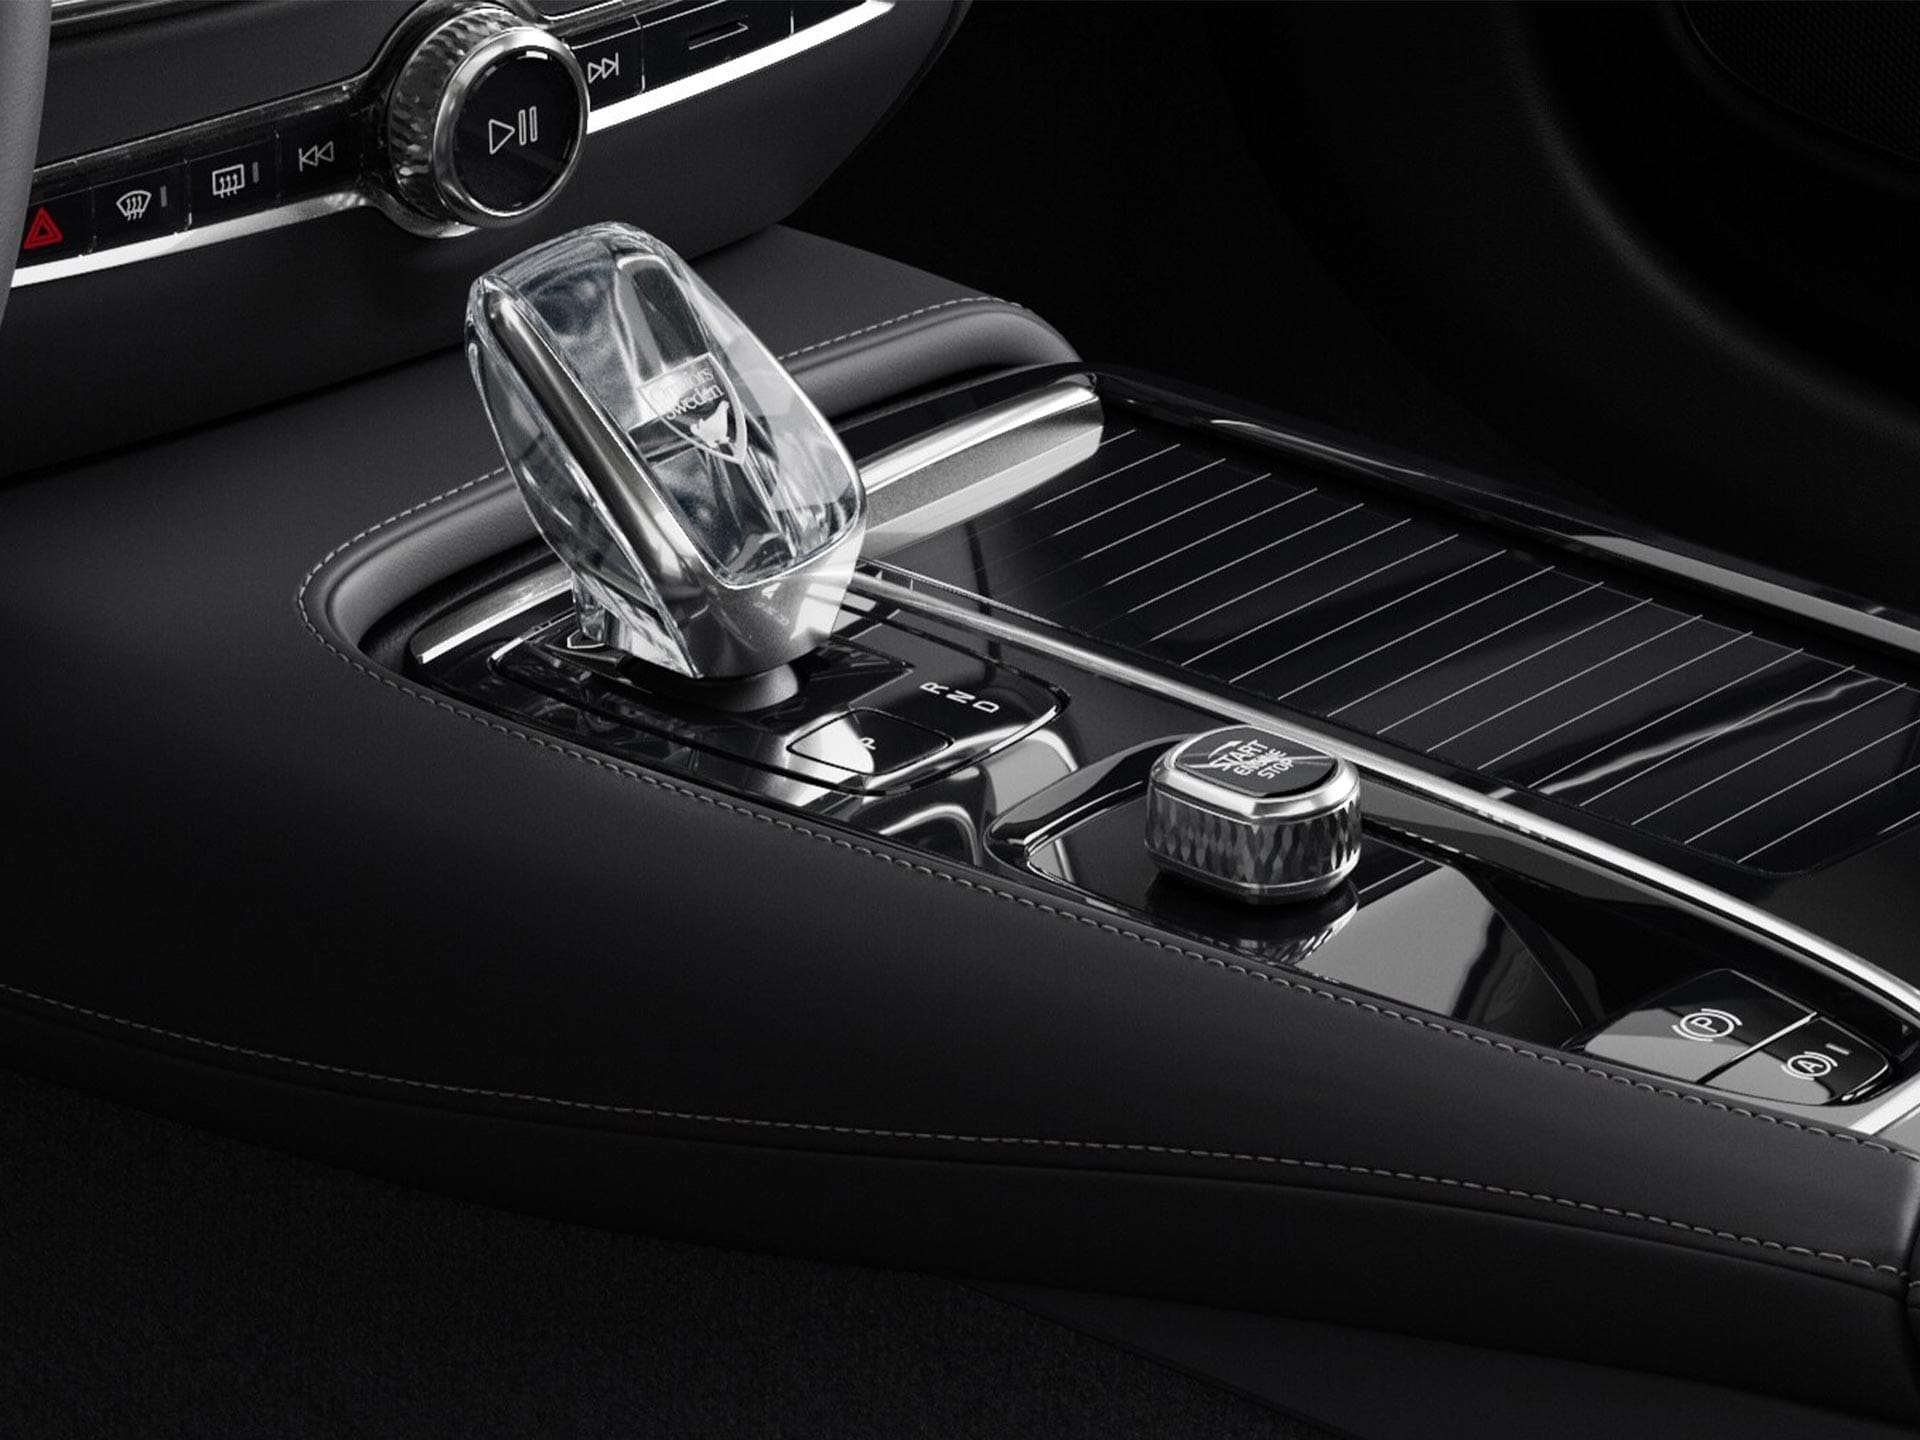 Pulsante di avviamento e selettore marce in cristallo nella console centrale della Volvo V60 Plug-in Hybrid.